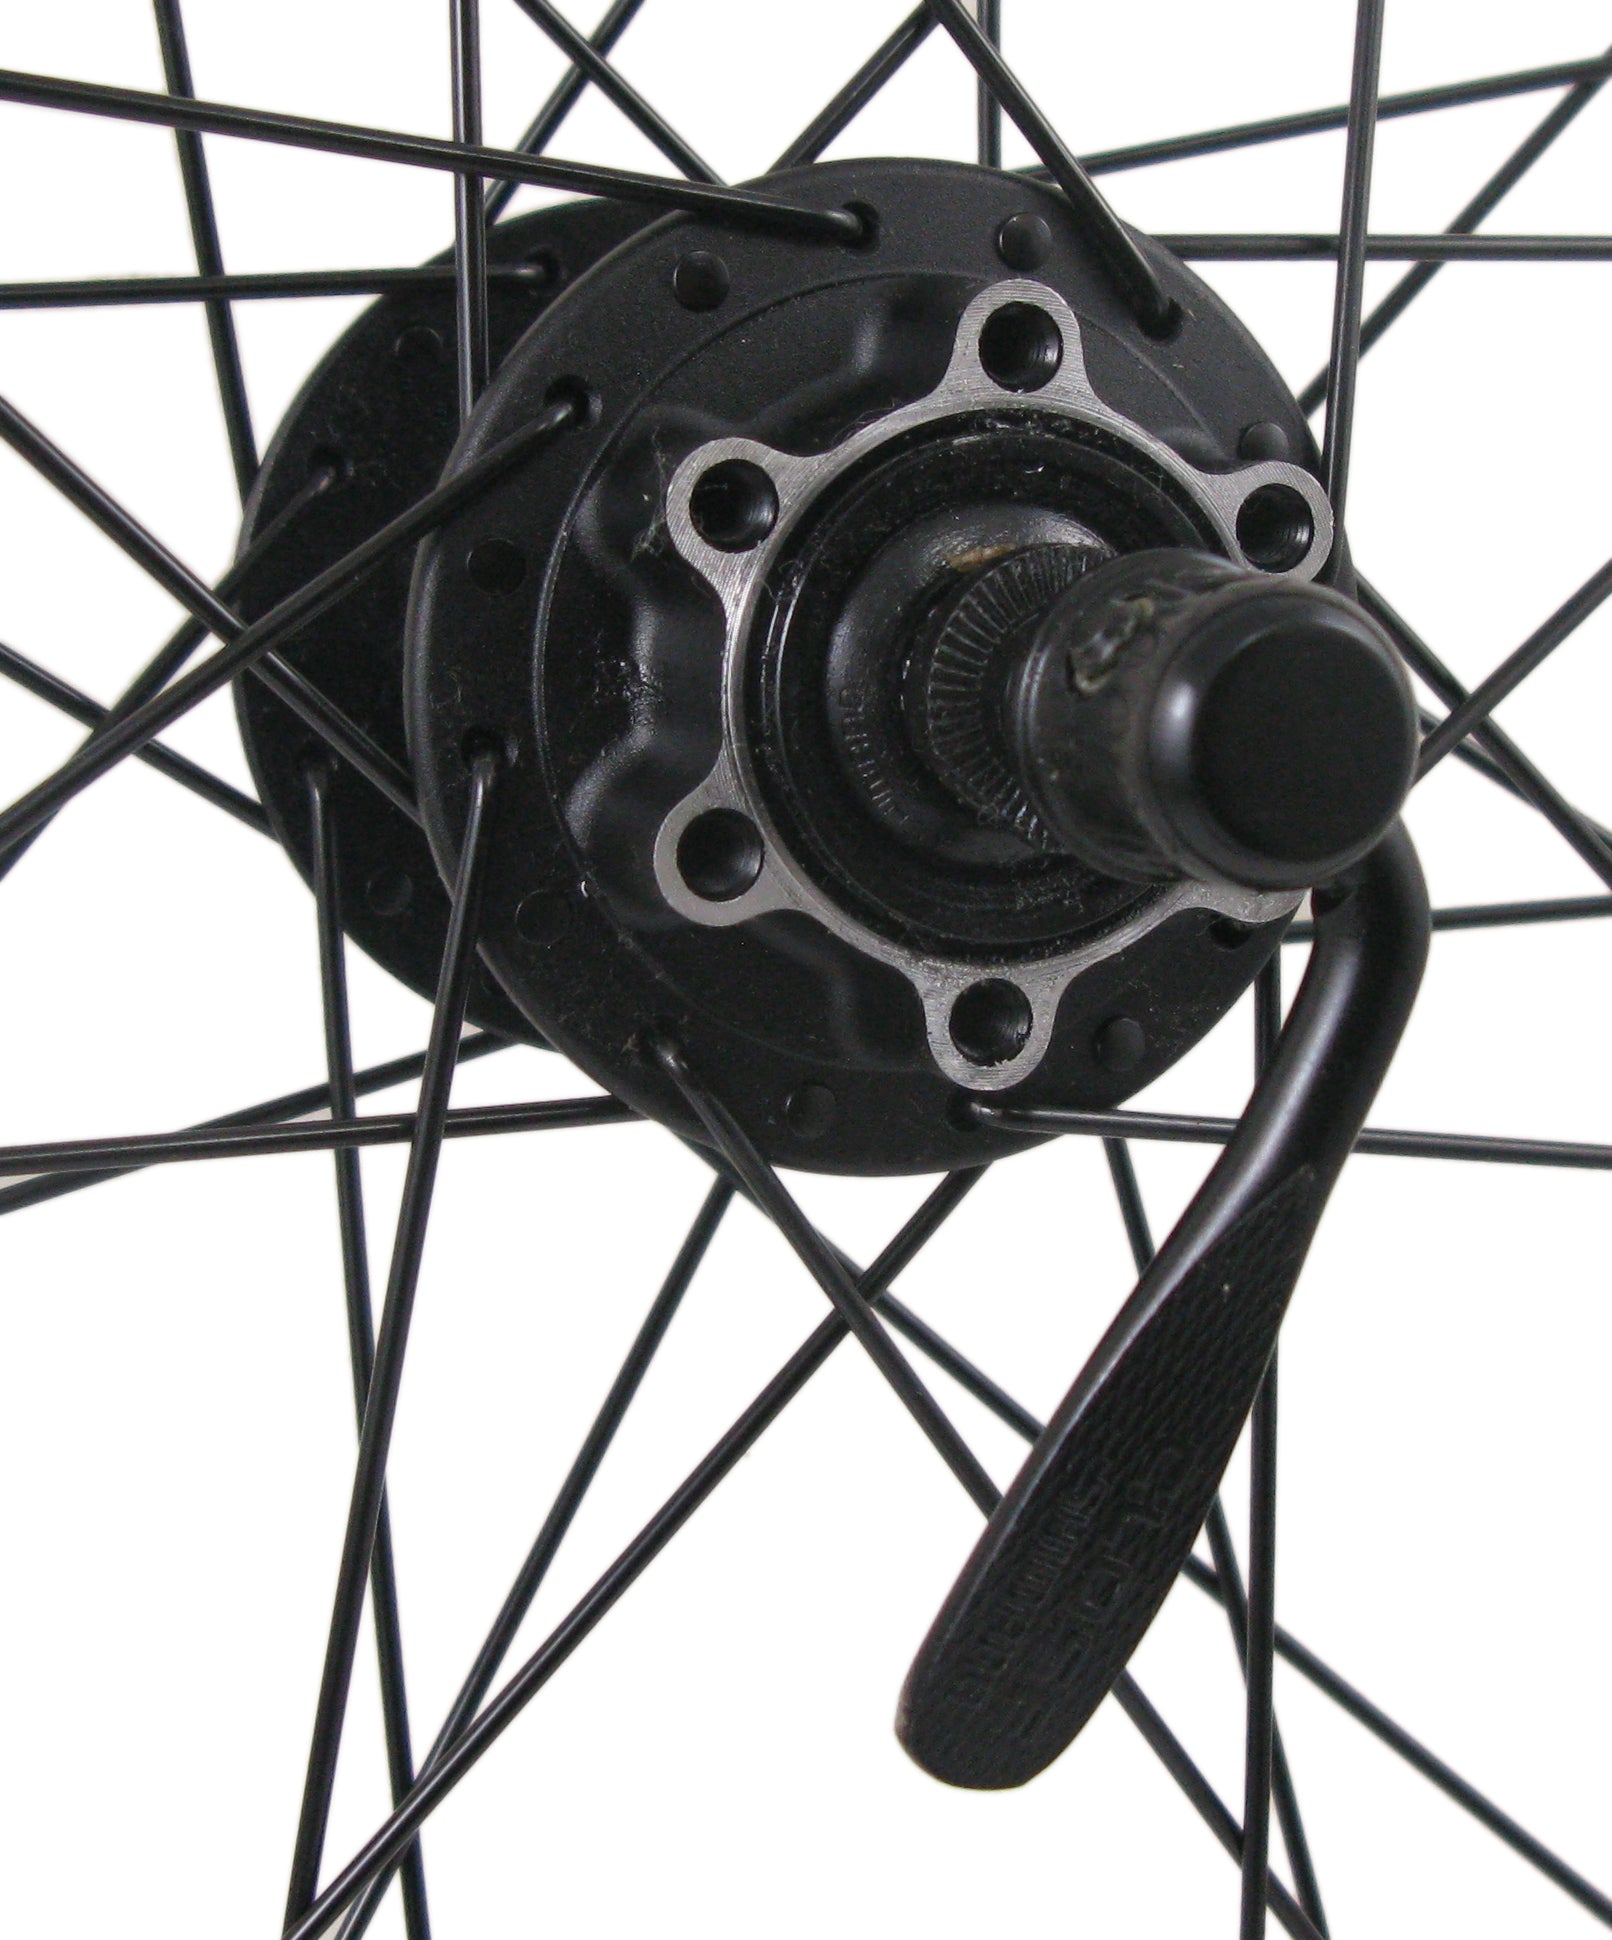 Sun Ringle MTX31 26-inch Shimano Black Disc Rear Wheel